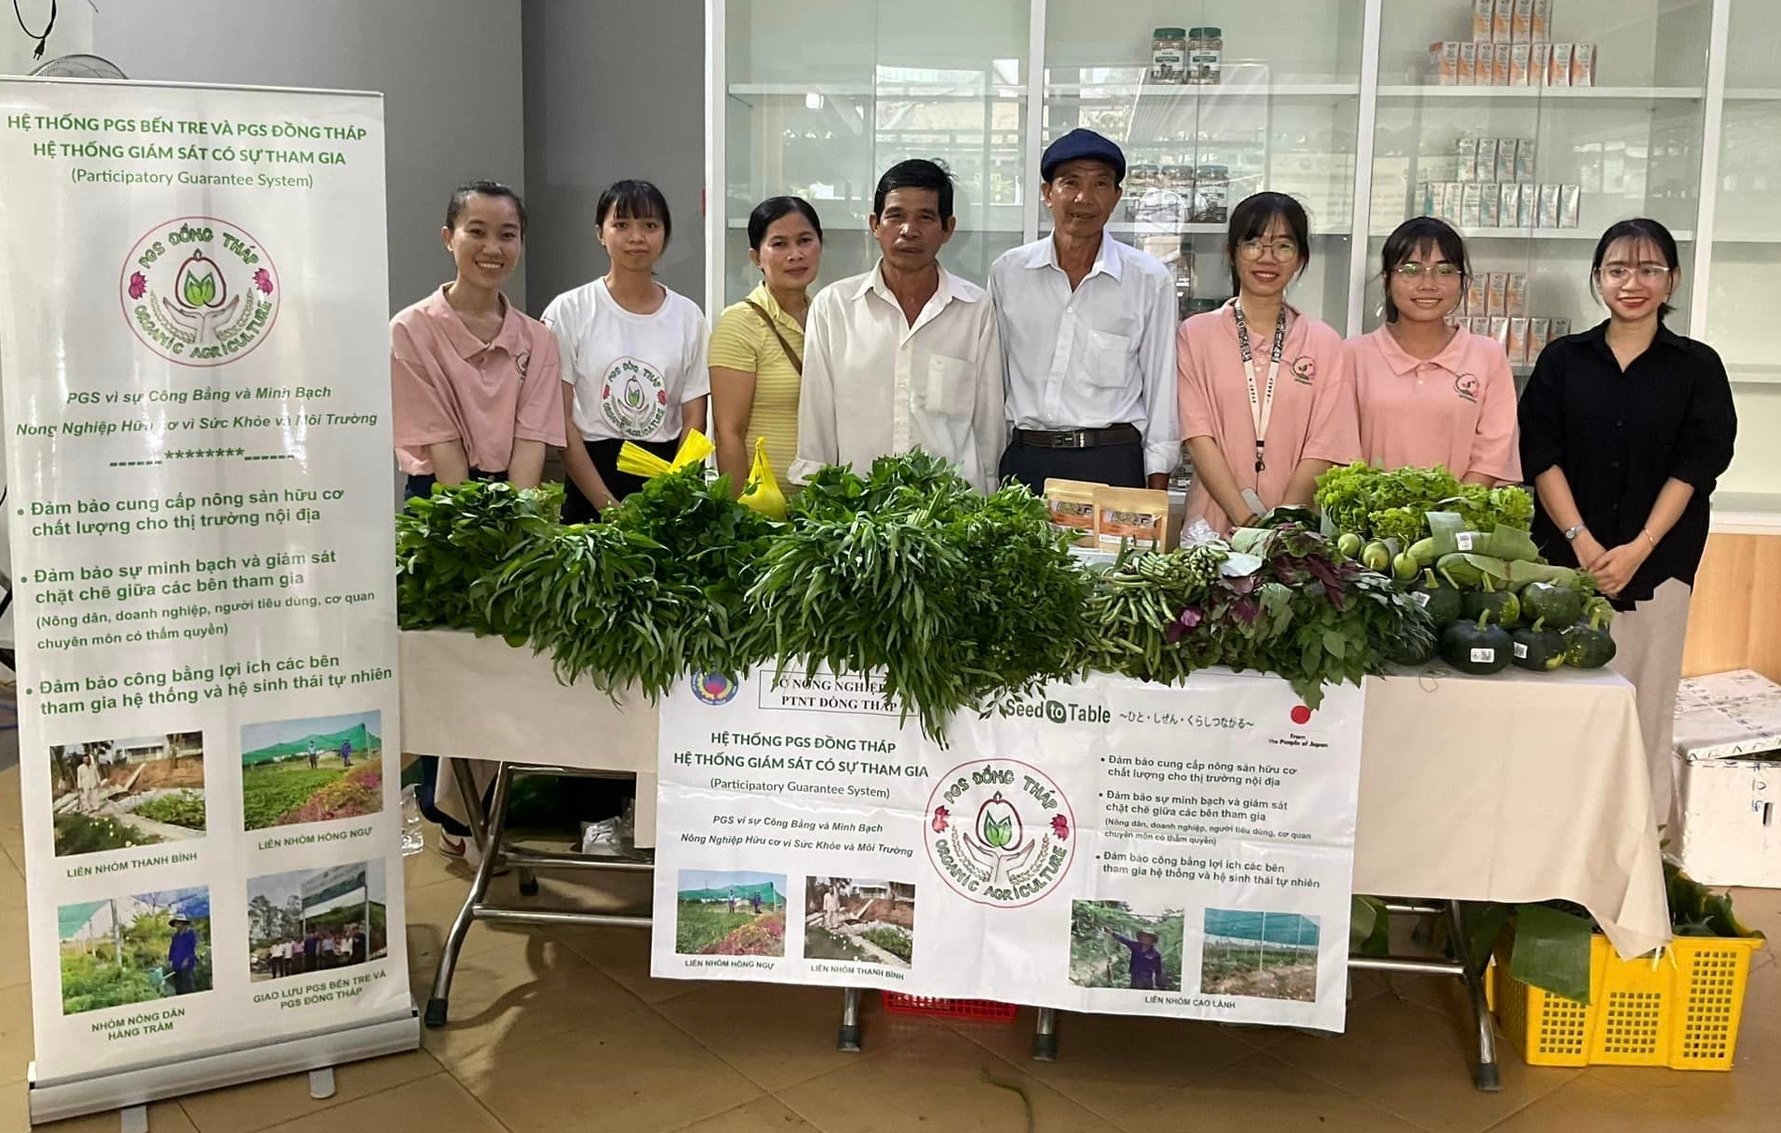 Nhóm nông dân Đồng Tháp mang rau hữu cơ bán tại Phiên chợ xanh - Tử tế (TP.HCM). Ảnh: Nguyễn Thủy.